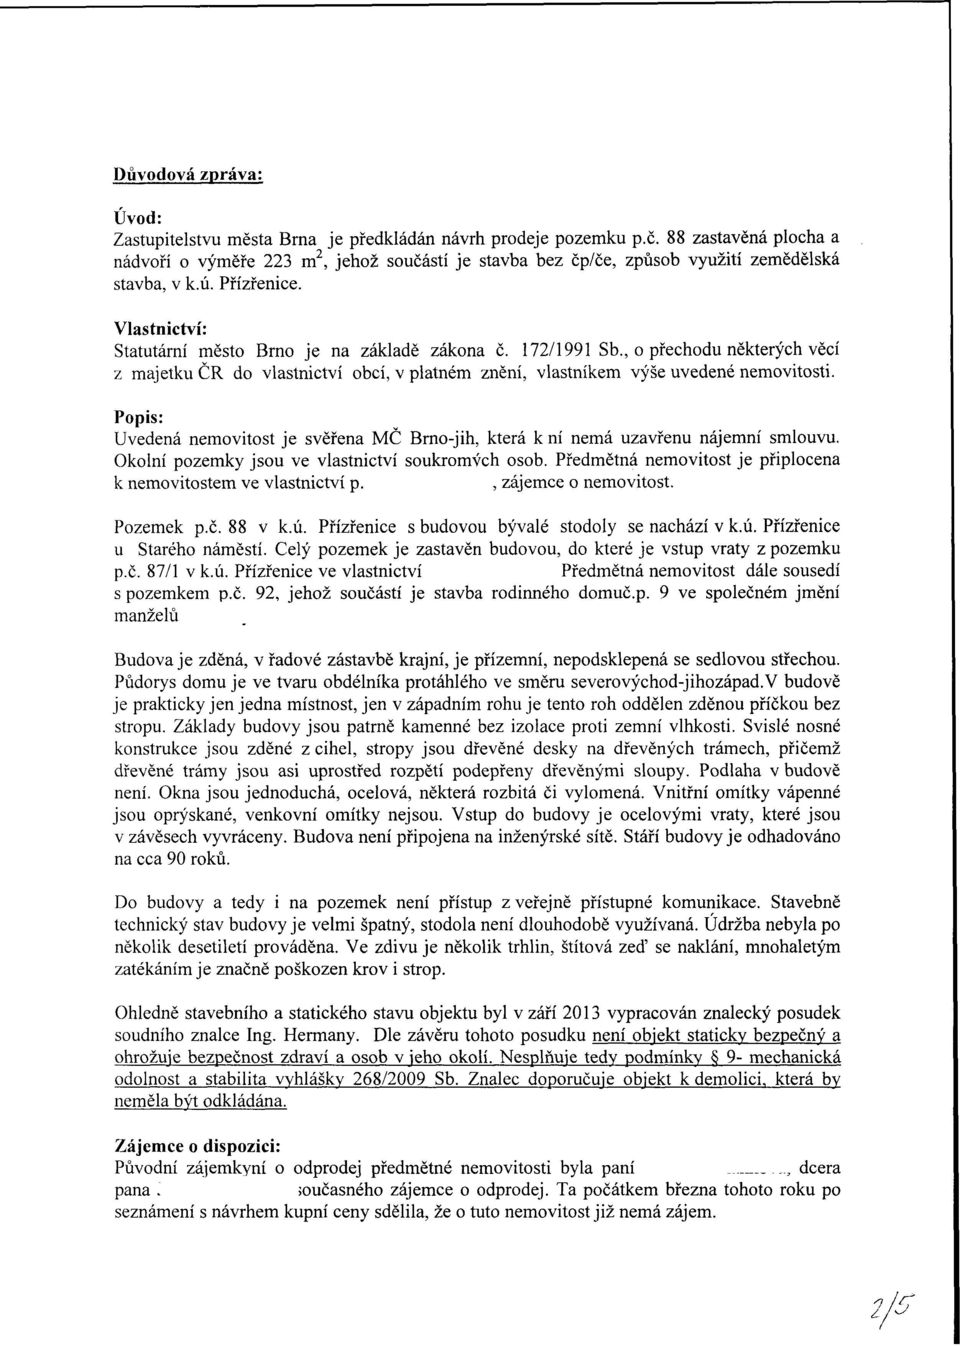 172/1991 Sb., o přechodu některých věcí z majetku ČR do vlastnictví obcí, v platném znění, vlastníkem výše uvedené nemovitosti.